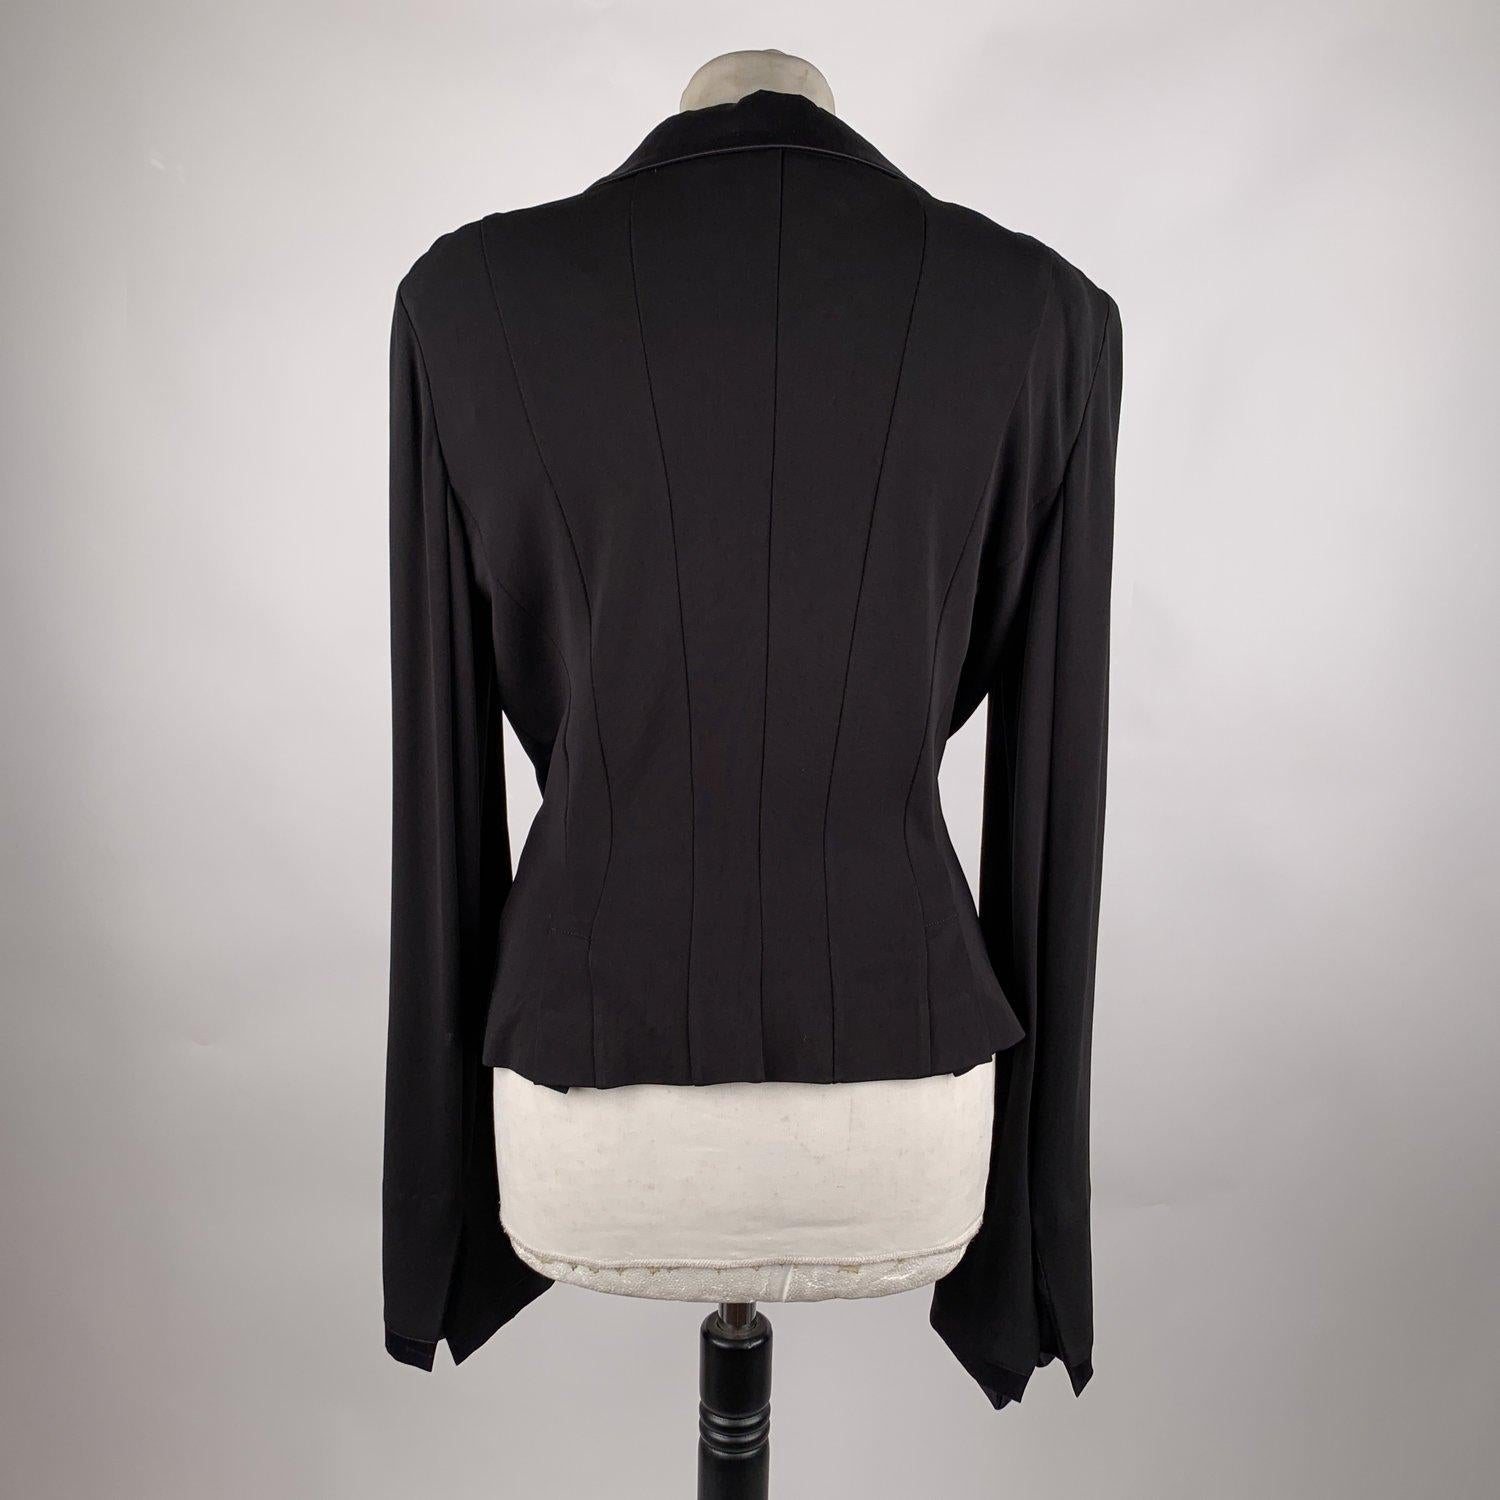 Gianfranco Ferré Black Blazer Jacket with Silk Trim Size 44 1